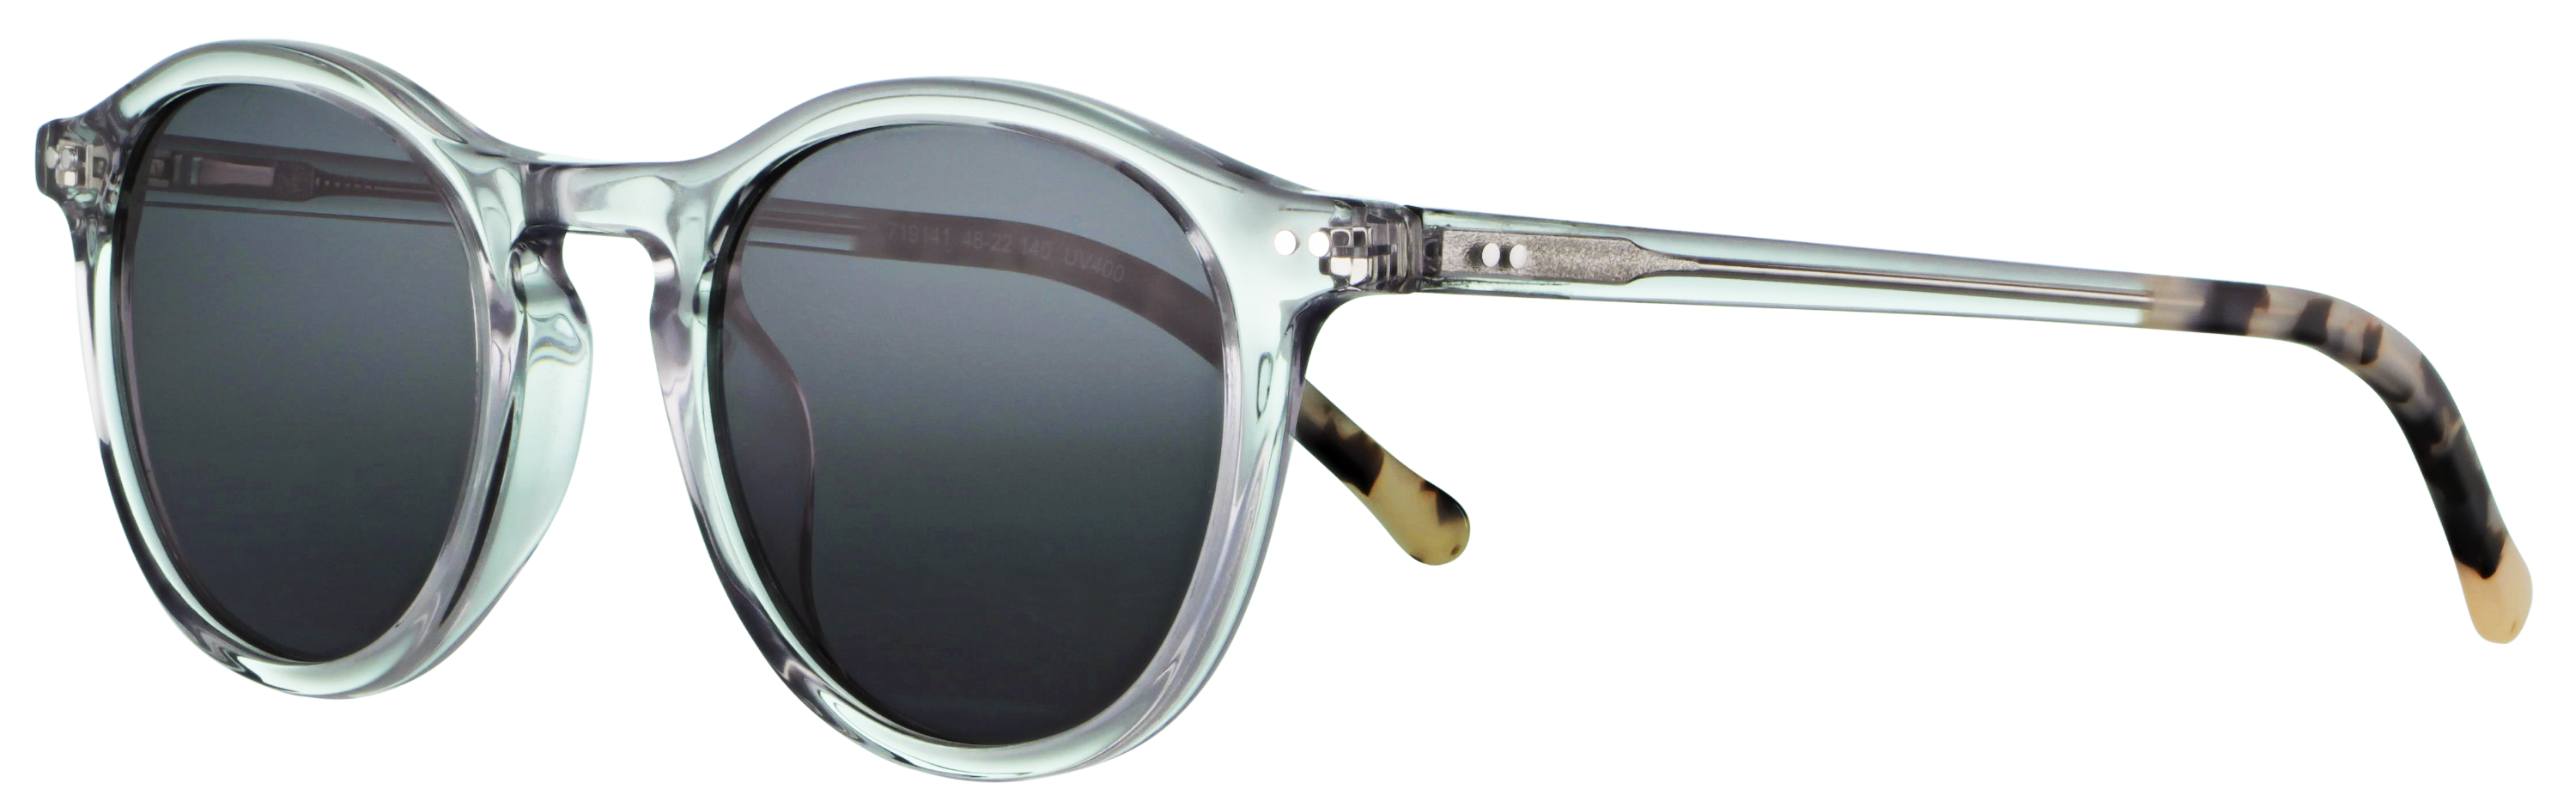 Das Bild zeigt die Sonnenbrille 719141 von der Marke Abele Optik in grau-transparent.